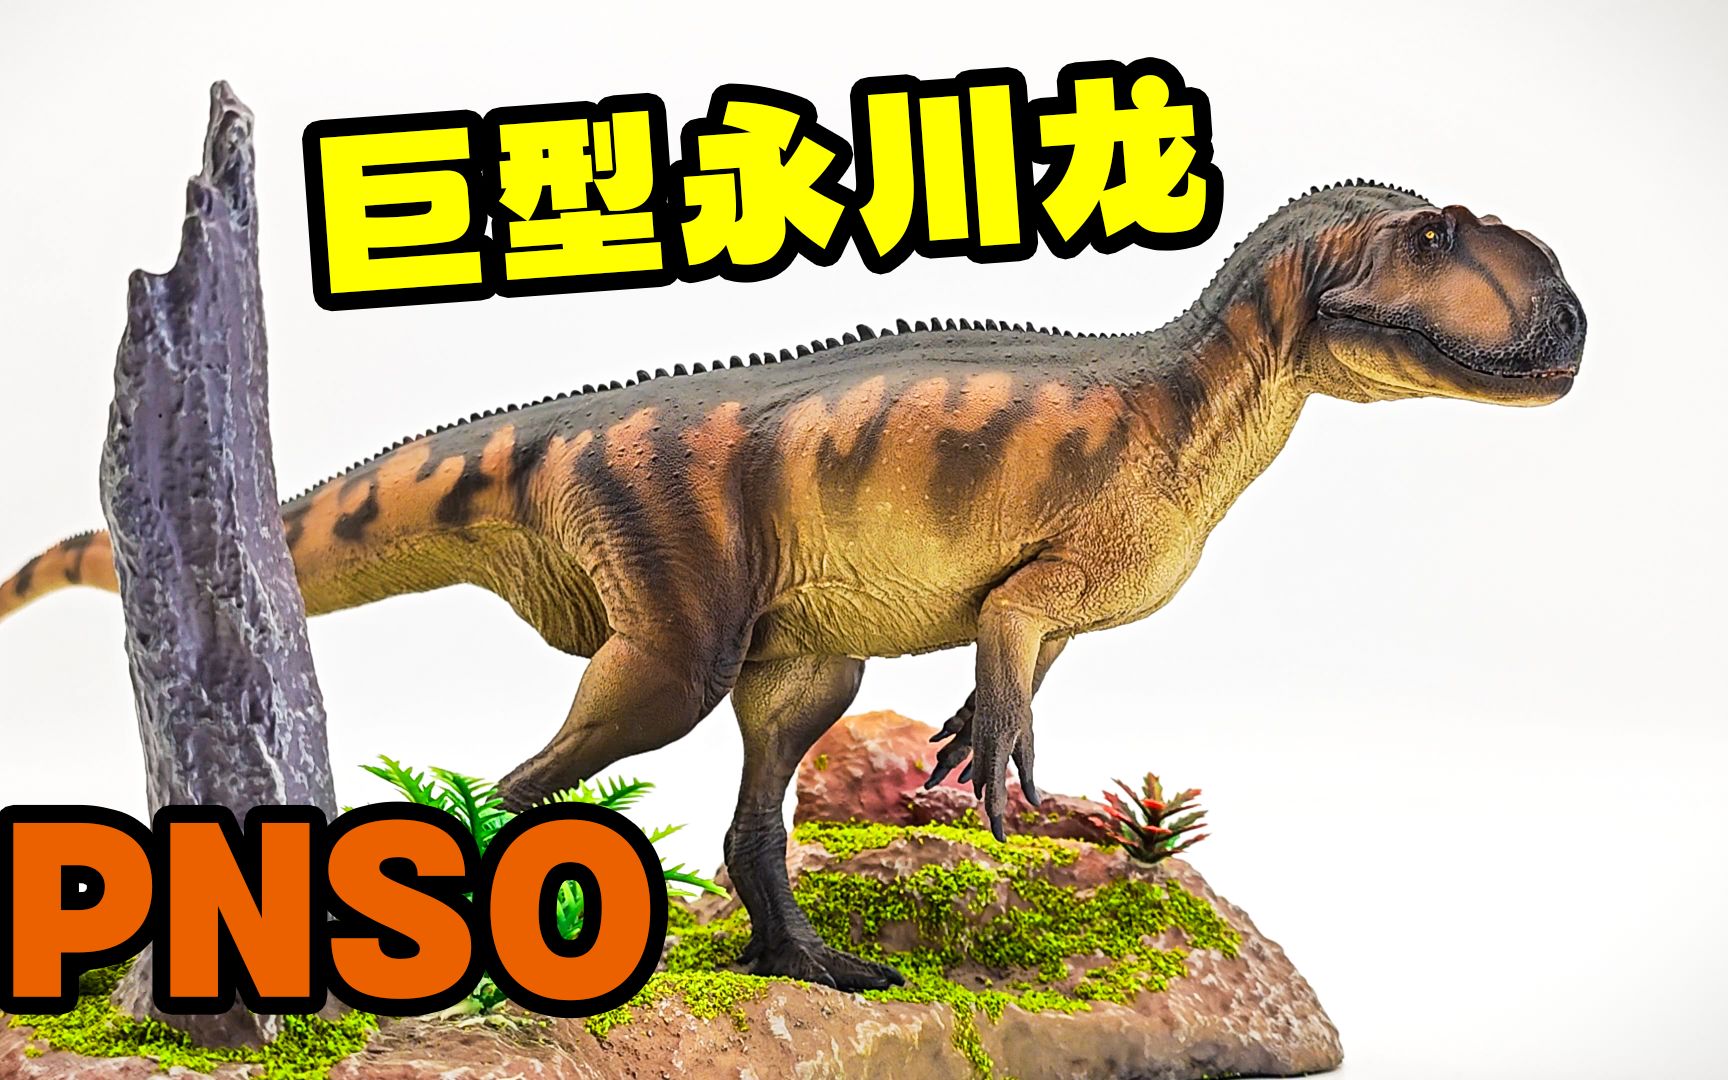 中华大地巨型肉食恐龙登场!pnso永川龙评测!